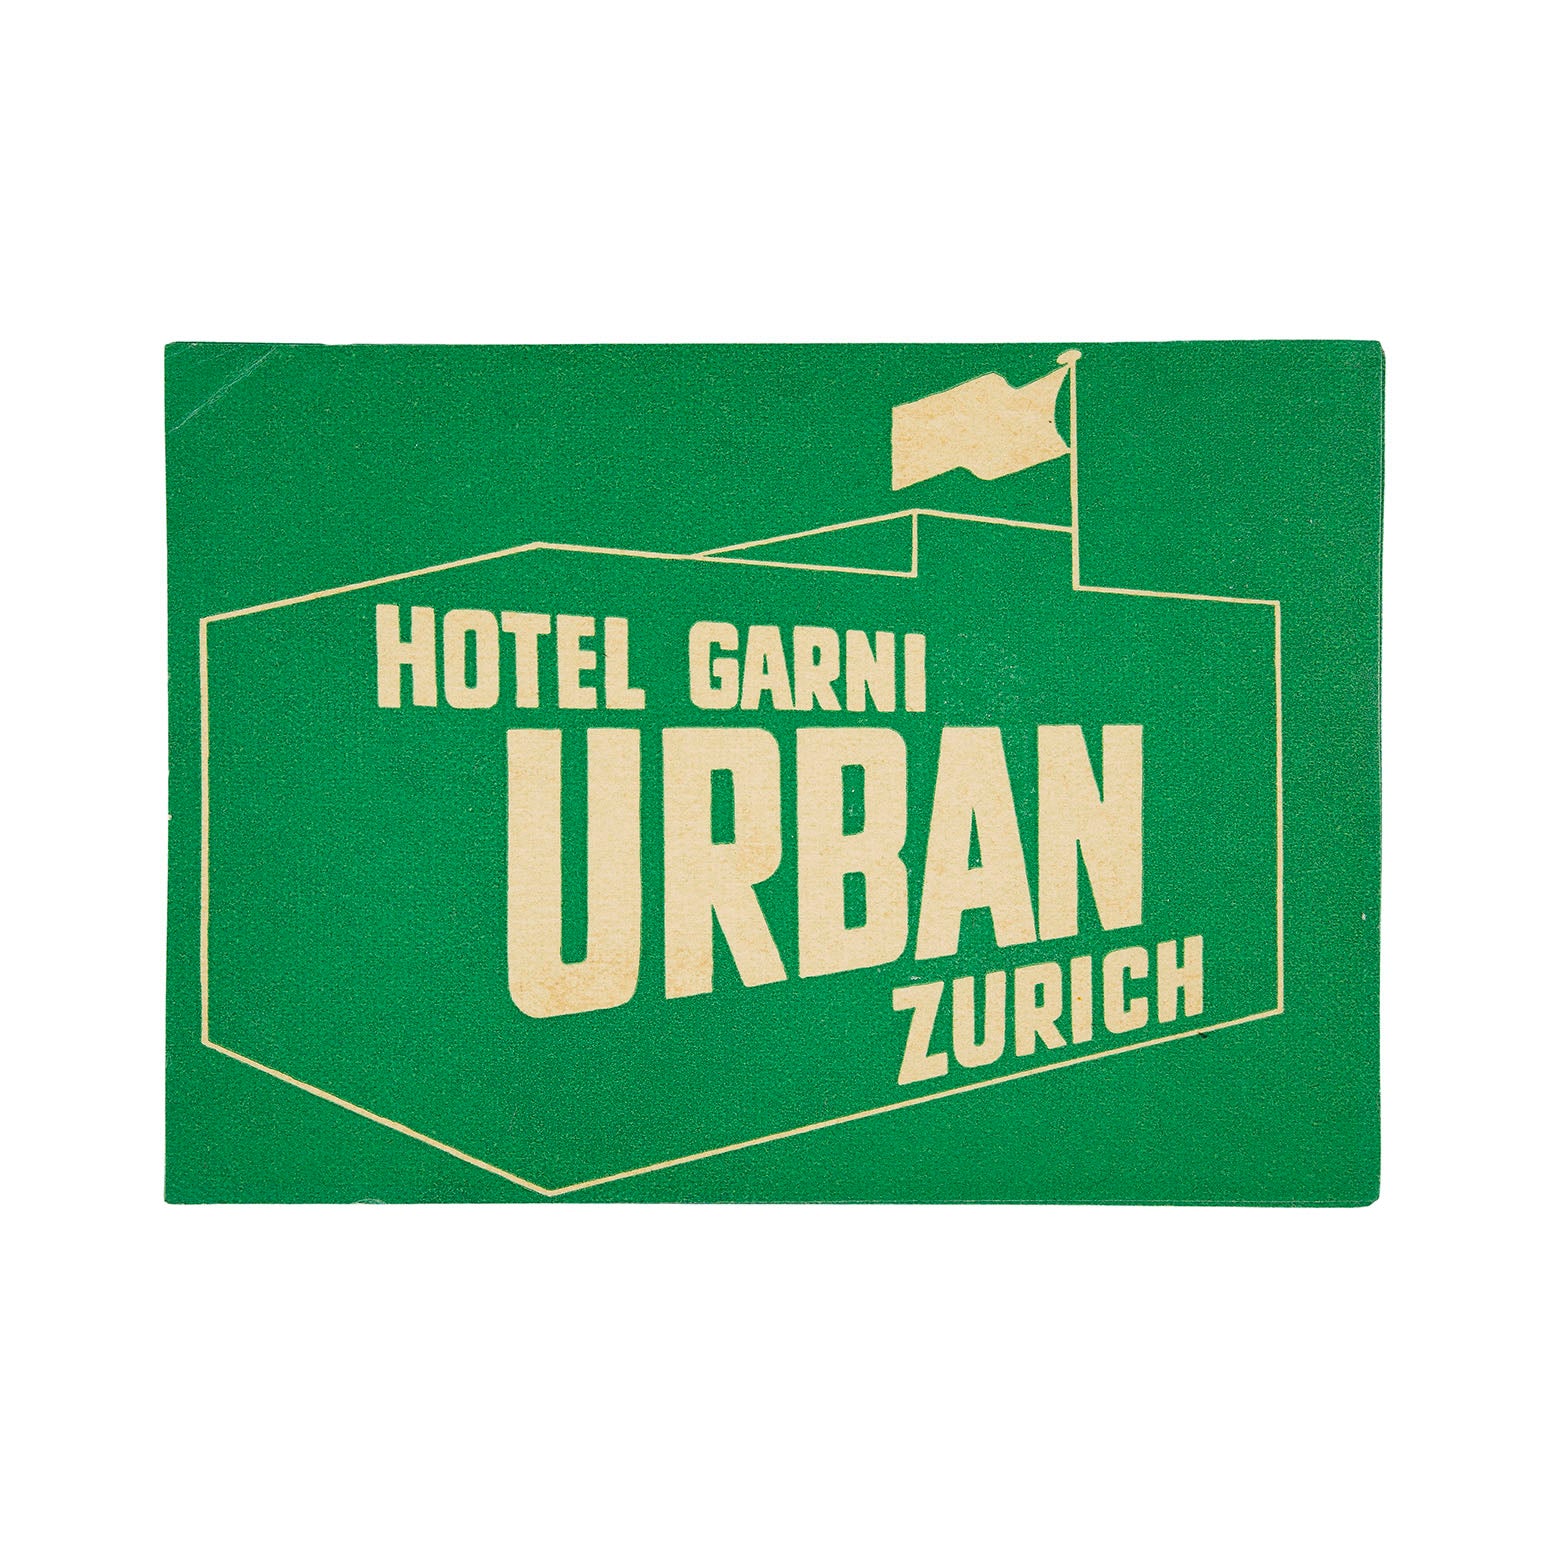 Hotel Garni Urban, Zurich (luggage label)